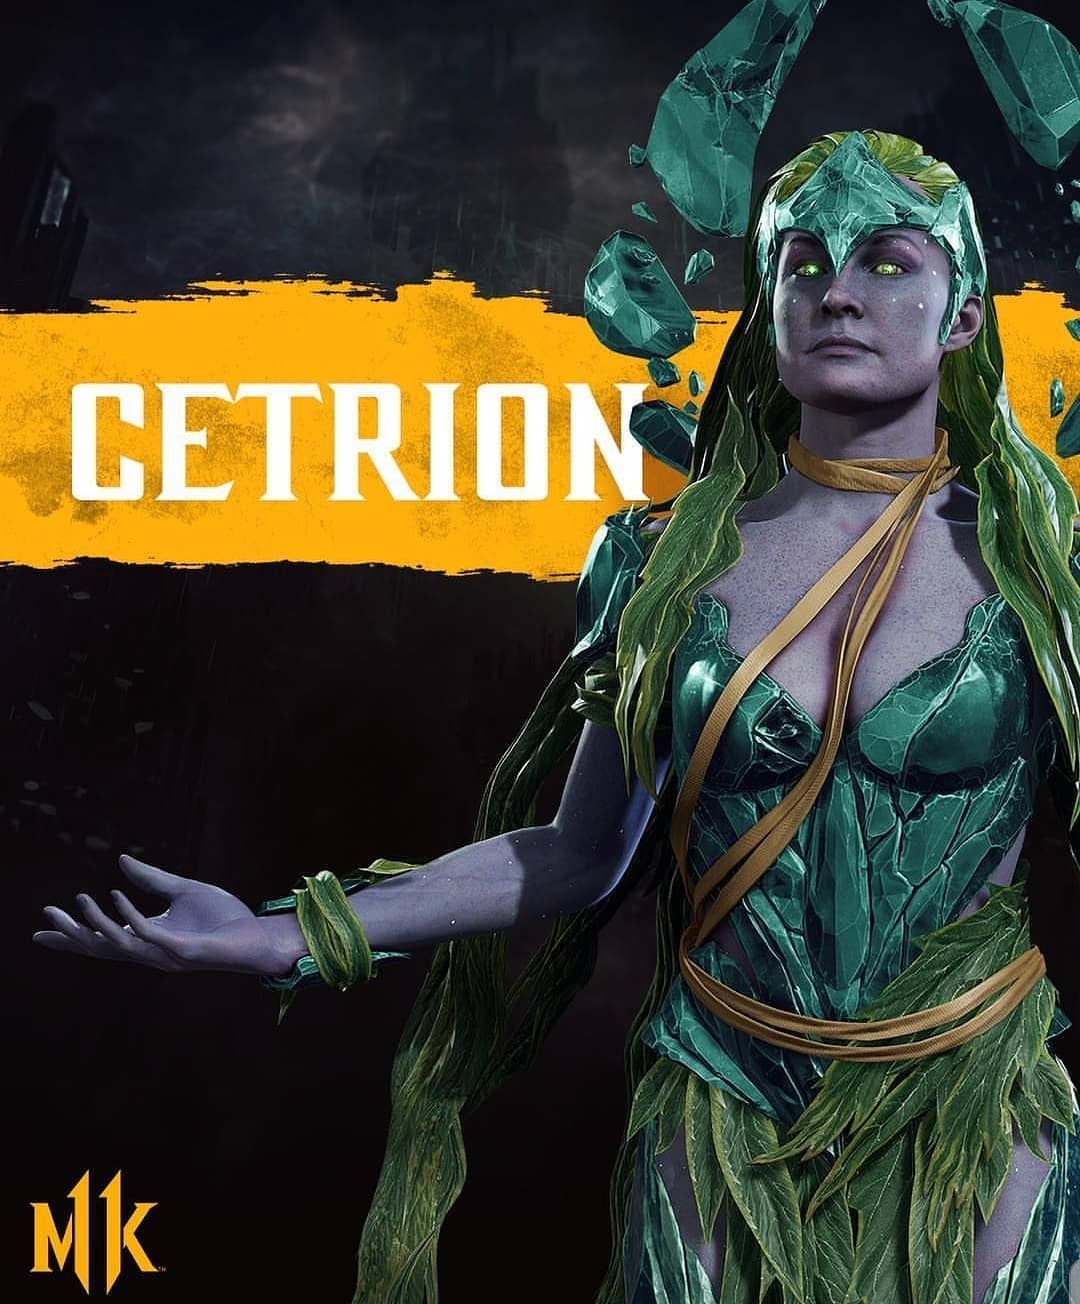 Cetrion. Mortal kombat, Mortal kombat characters, Mortal combat